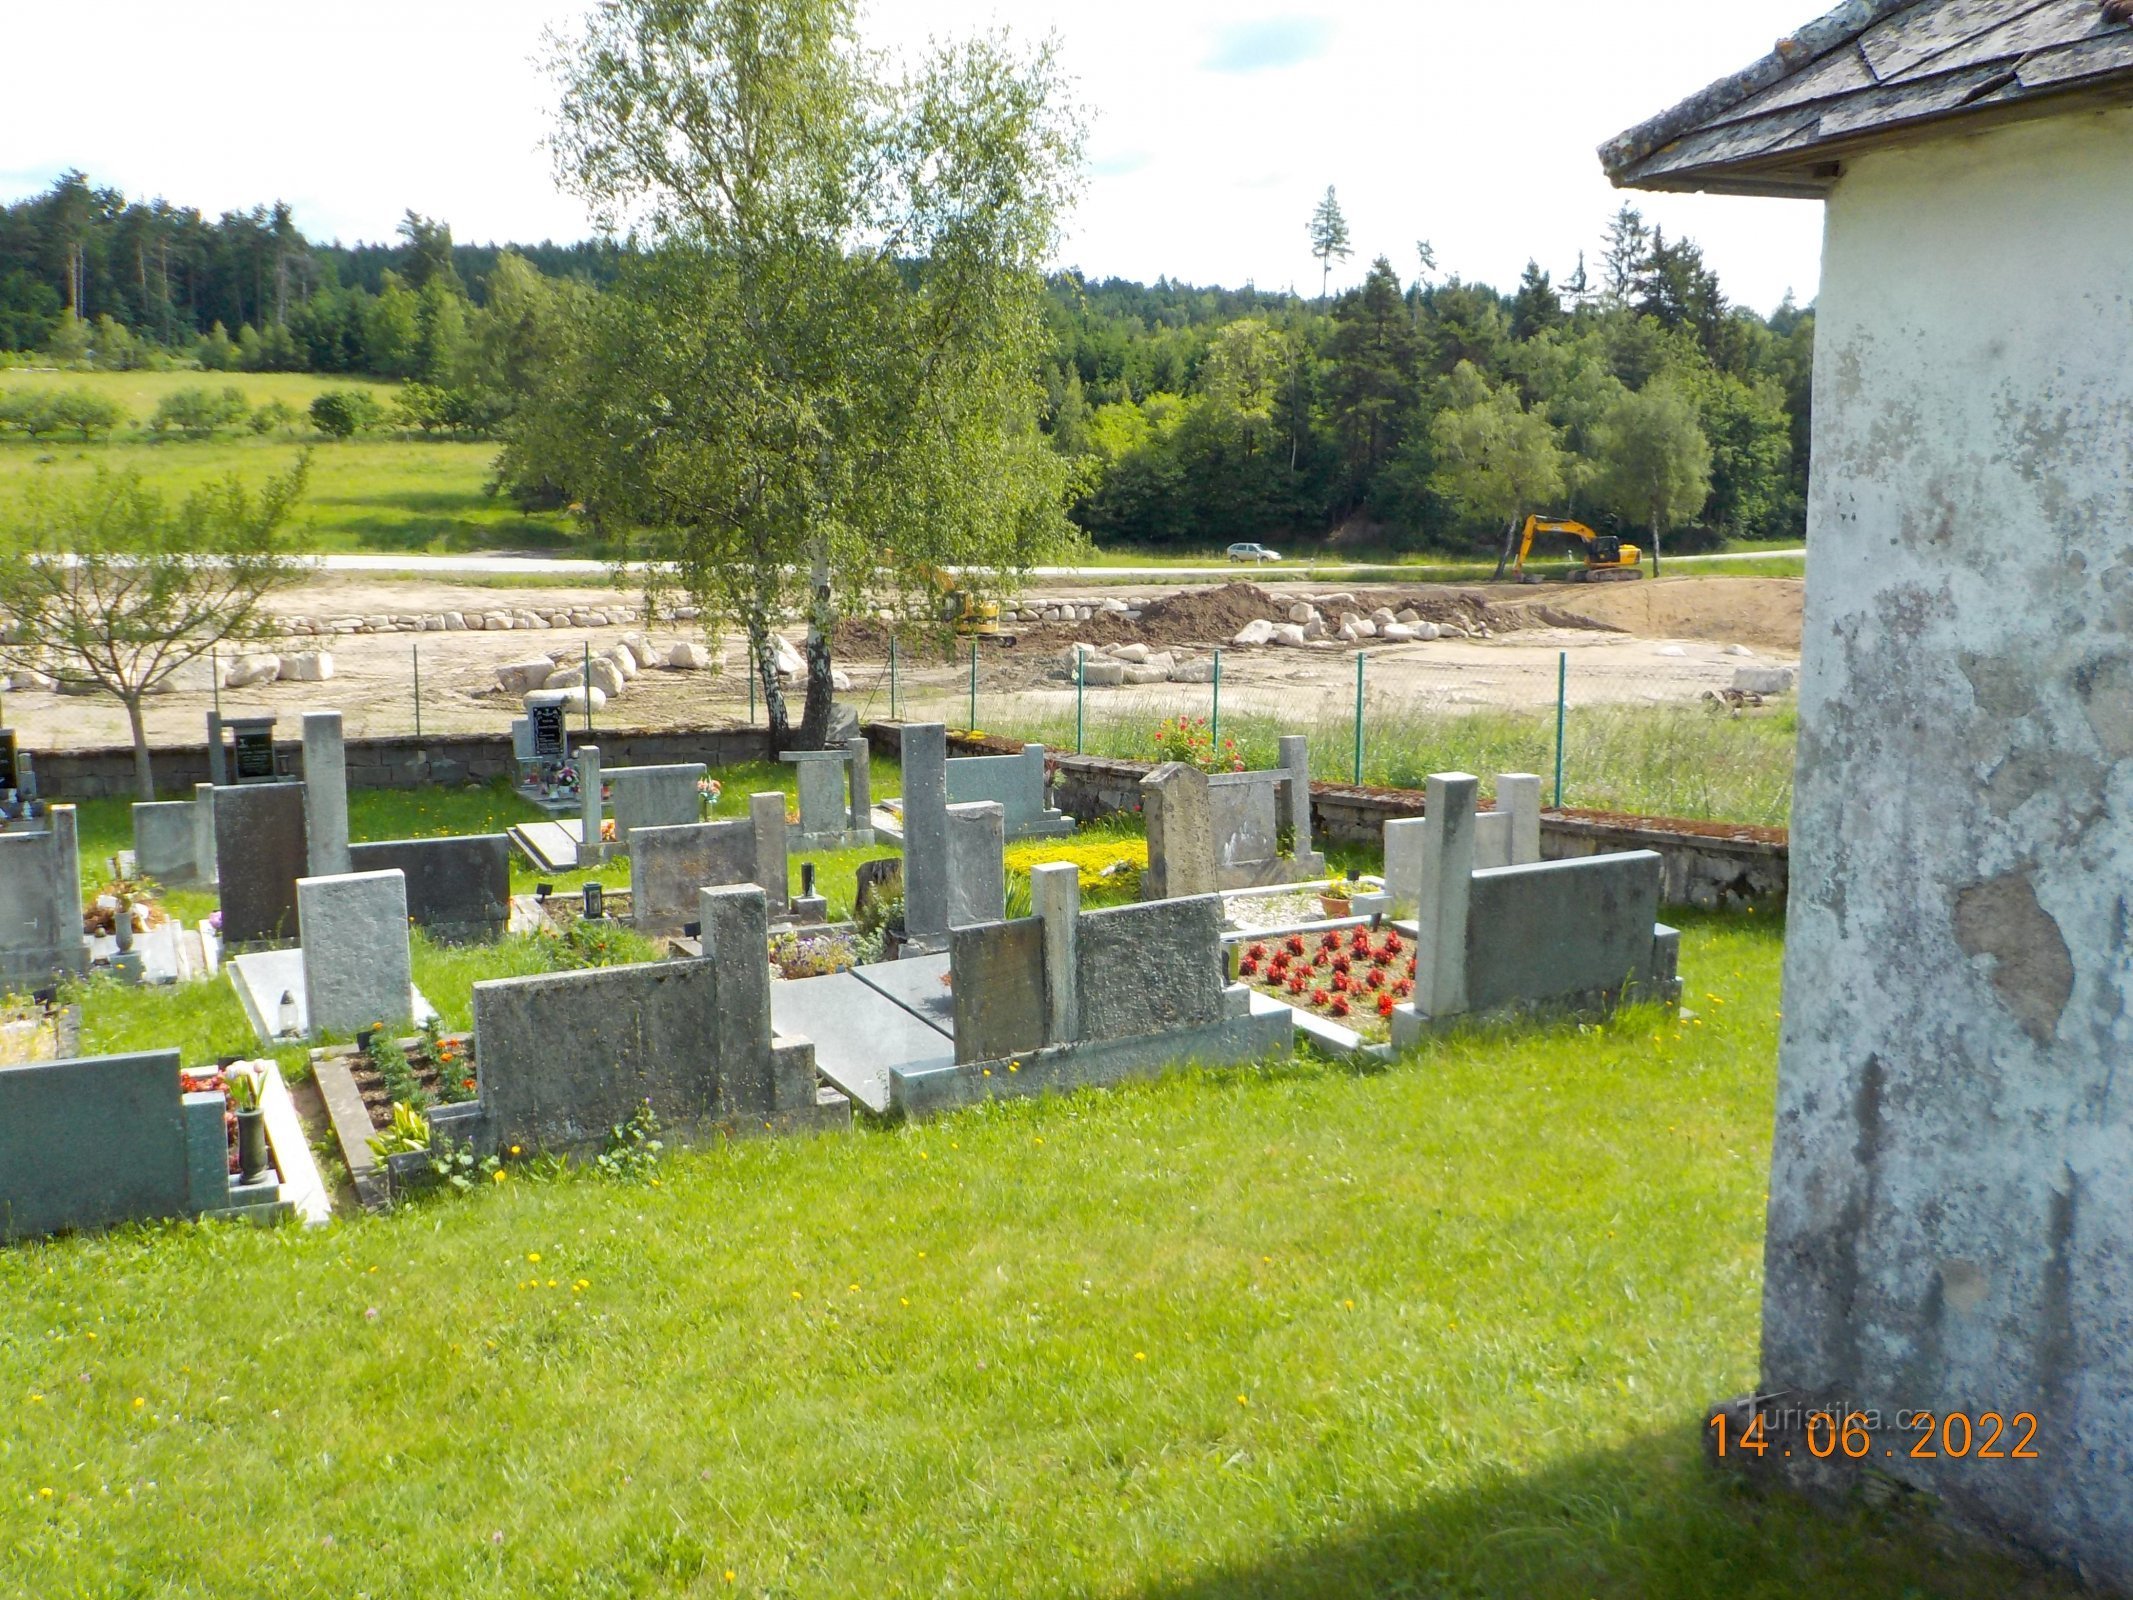 Construcción de un nuevo estanque cerca del cementerio.